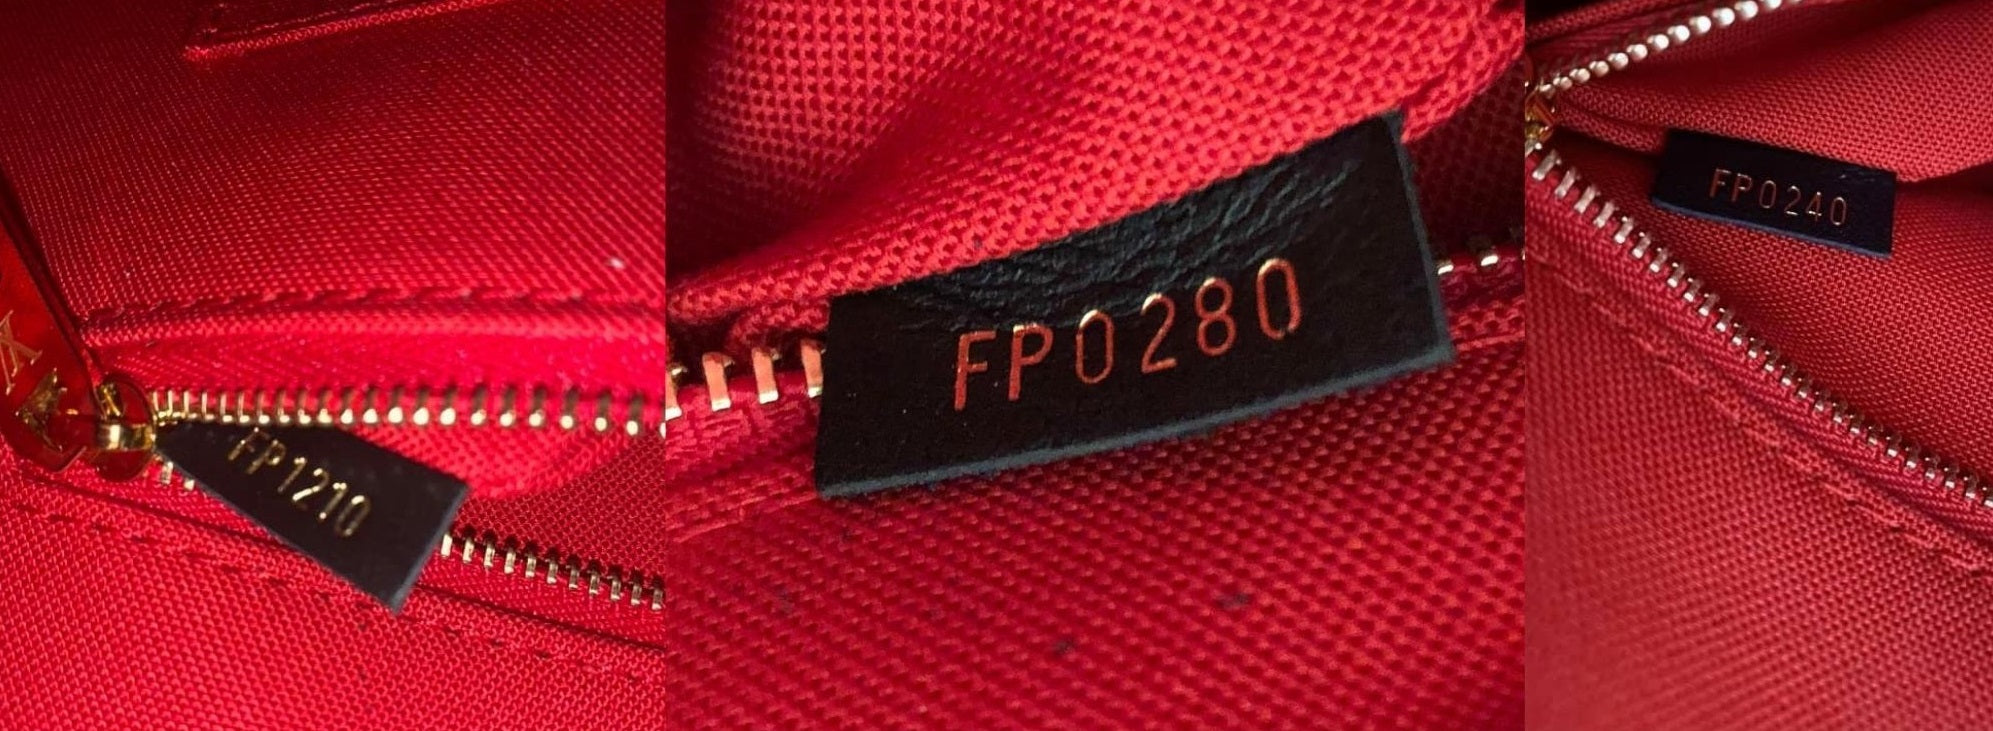 A Short Guide to Deciphering Louis Vuitton Date Codes – Poshbag Boutique